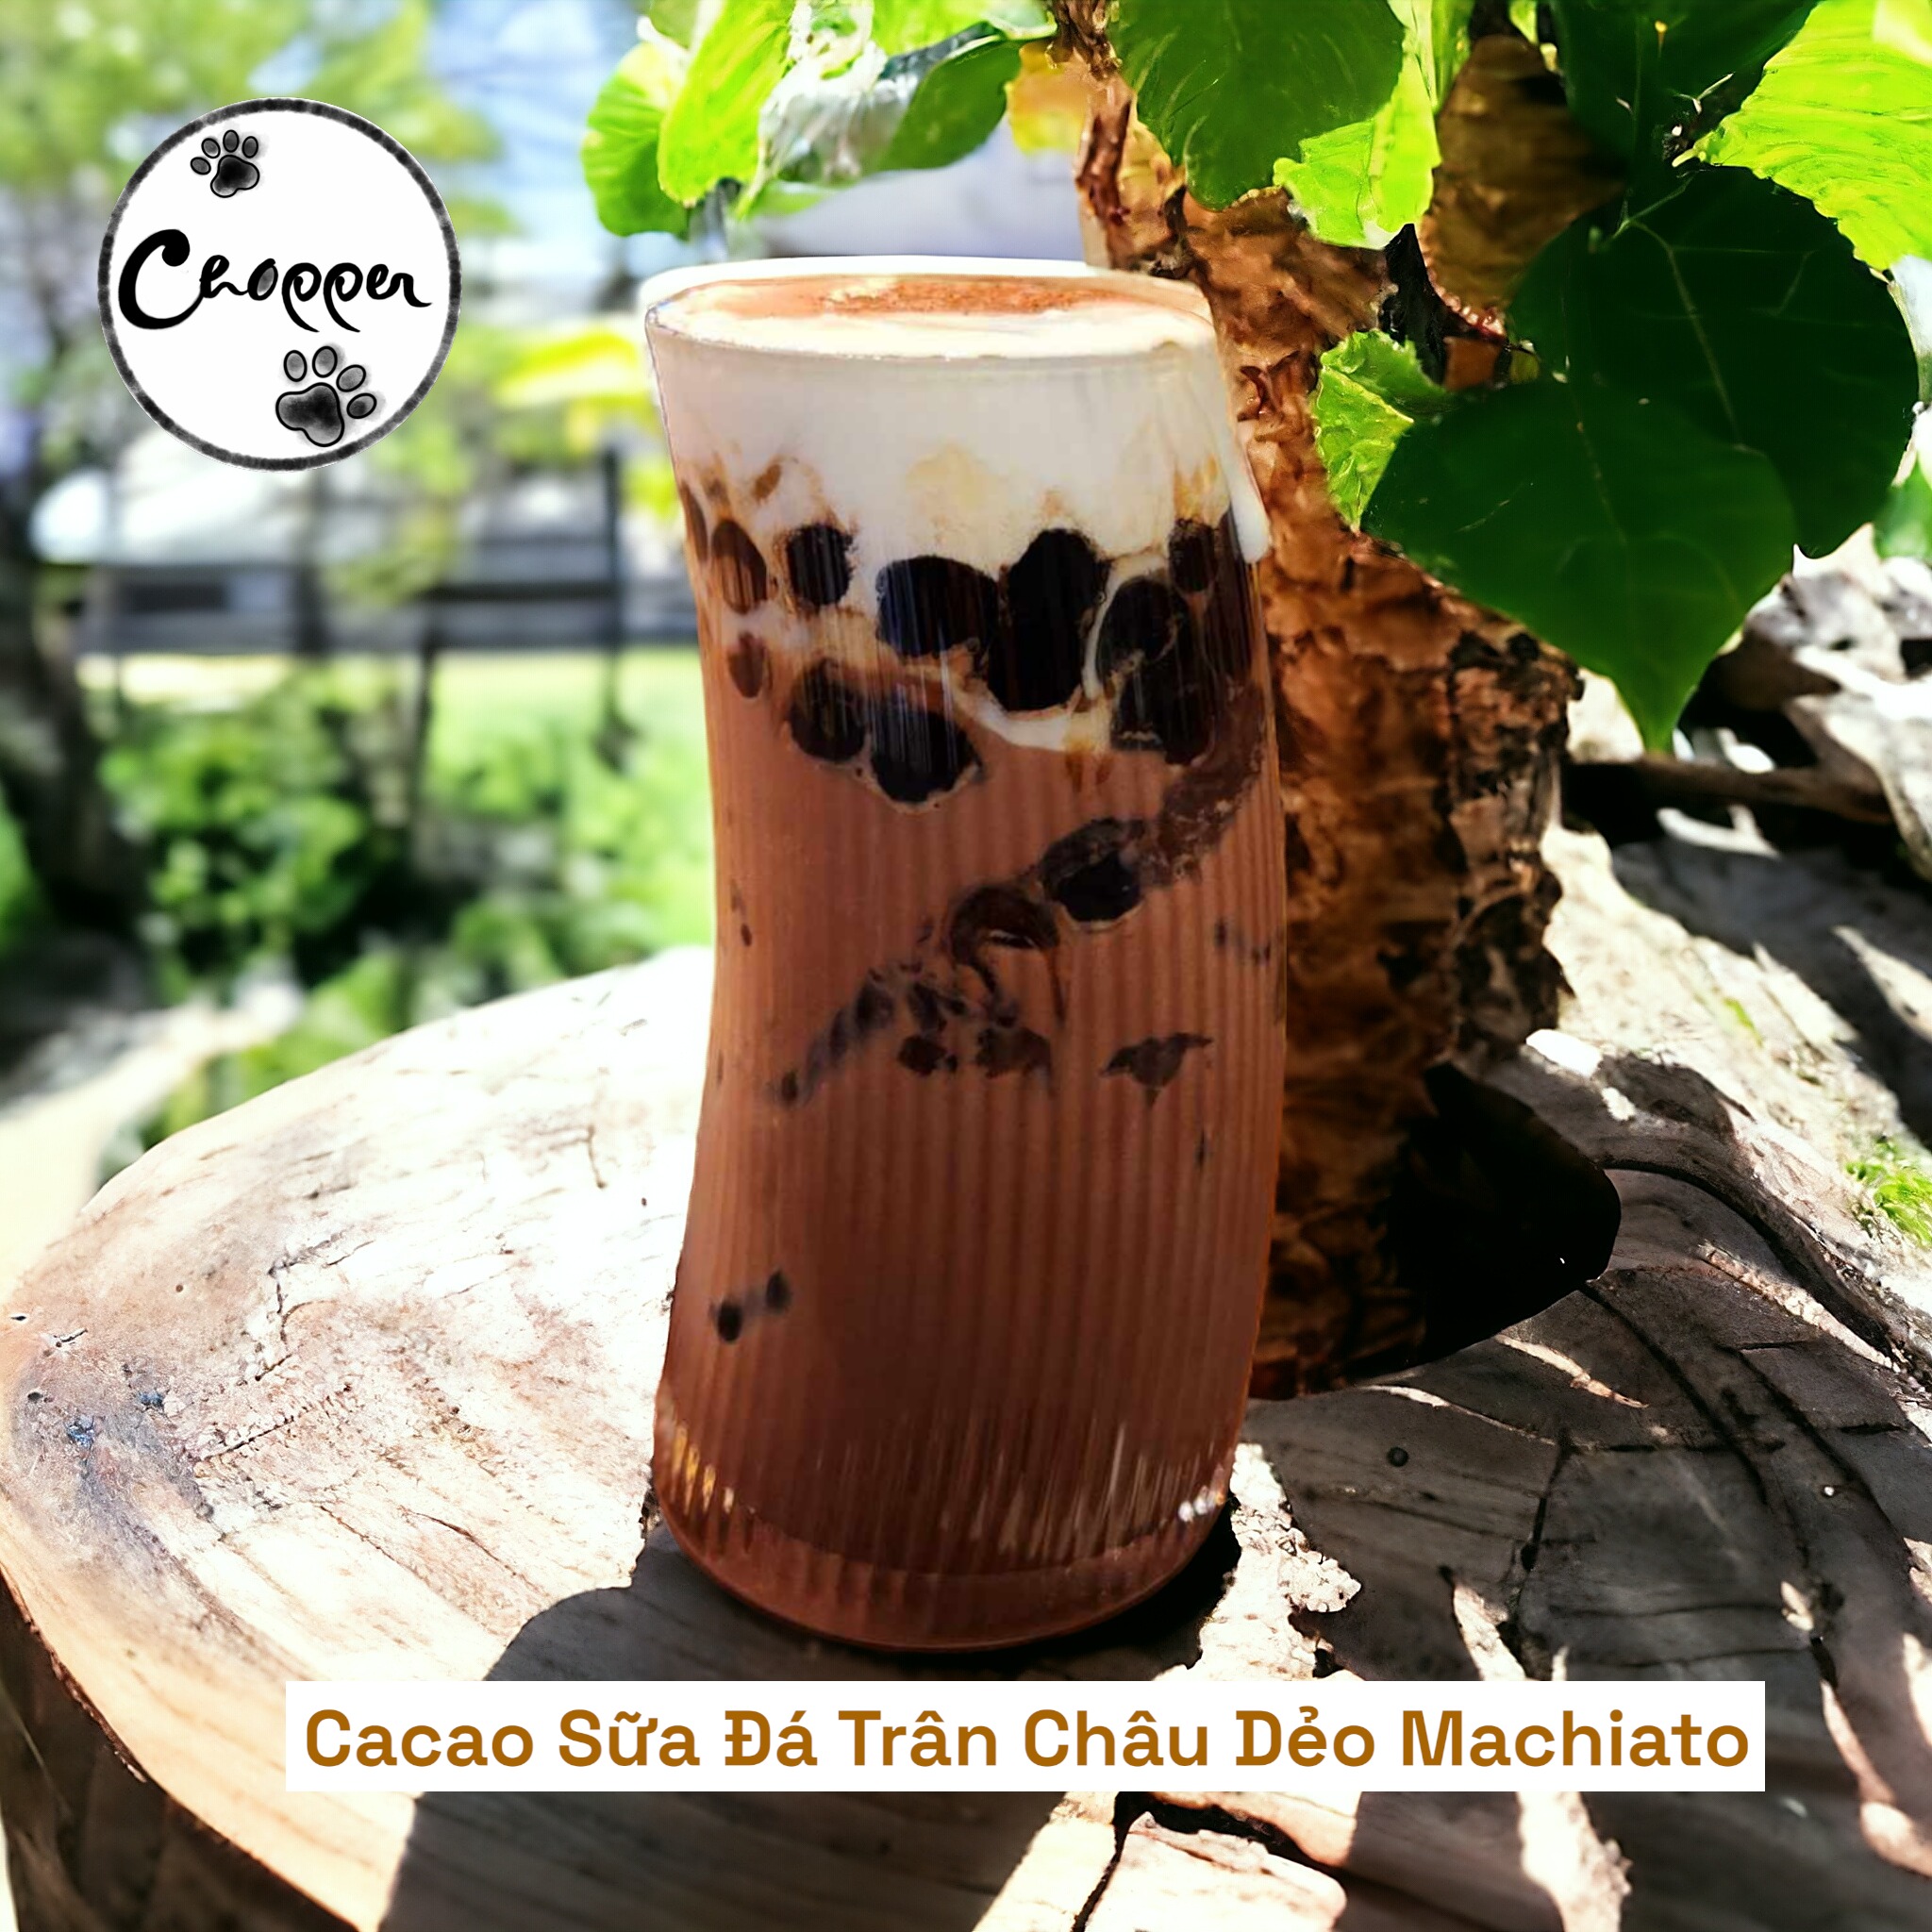 Cacao Sữa Đá Trân Châu Dẻo Machiato